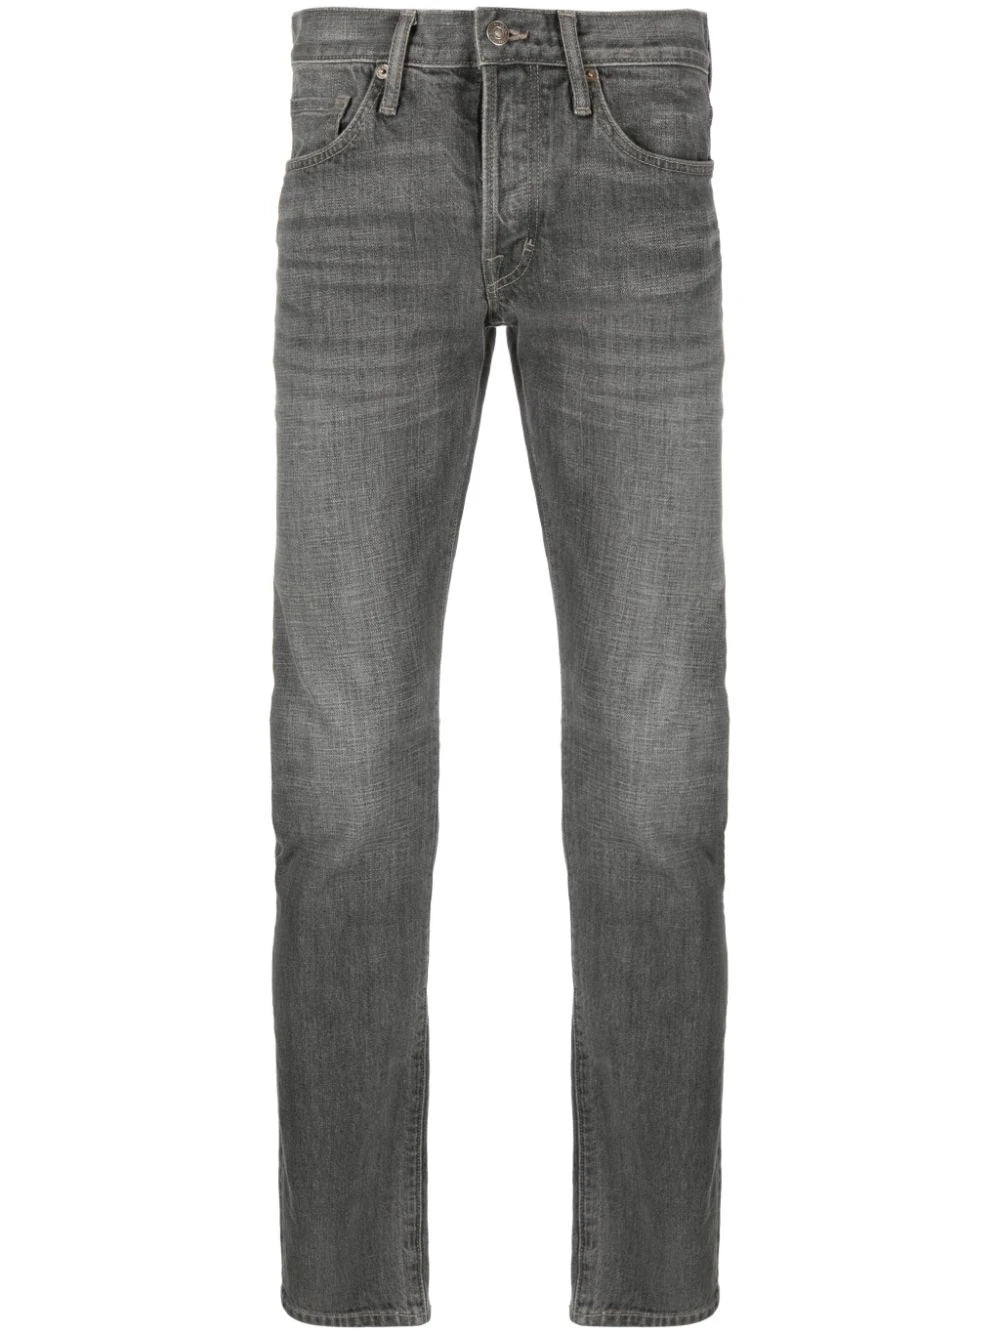 TOM FORD MEN Washed Slim Fit Denim Jeans Grey - MAISONDEFASHION.COM